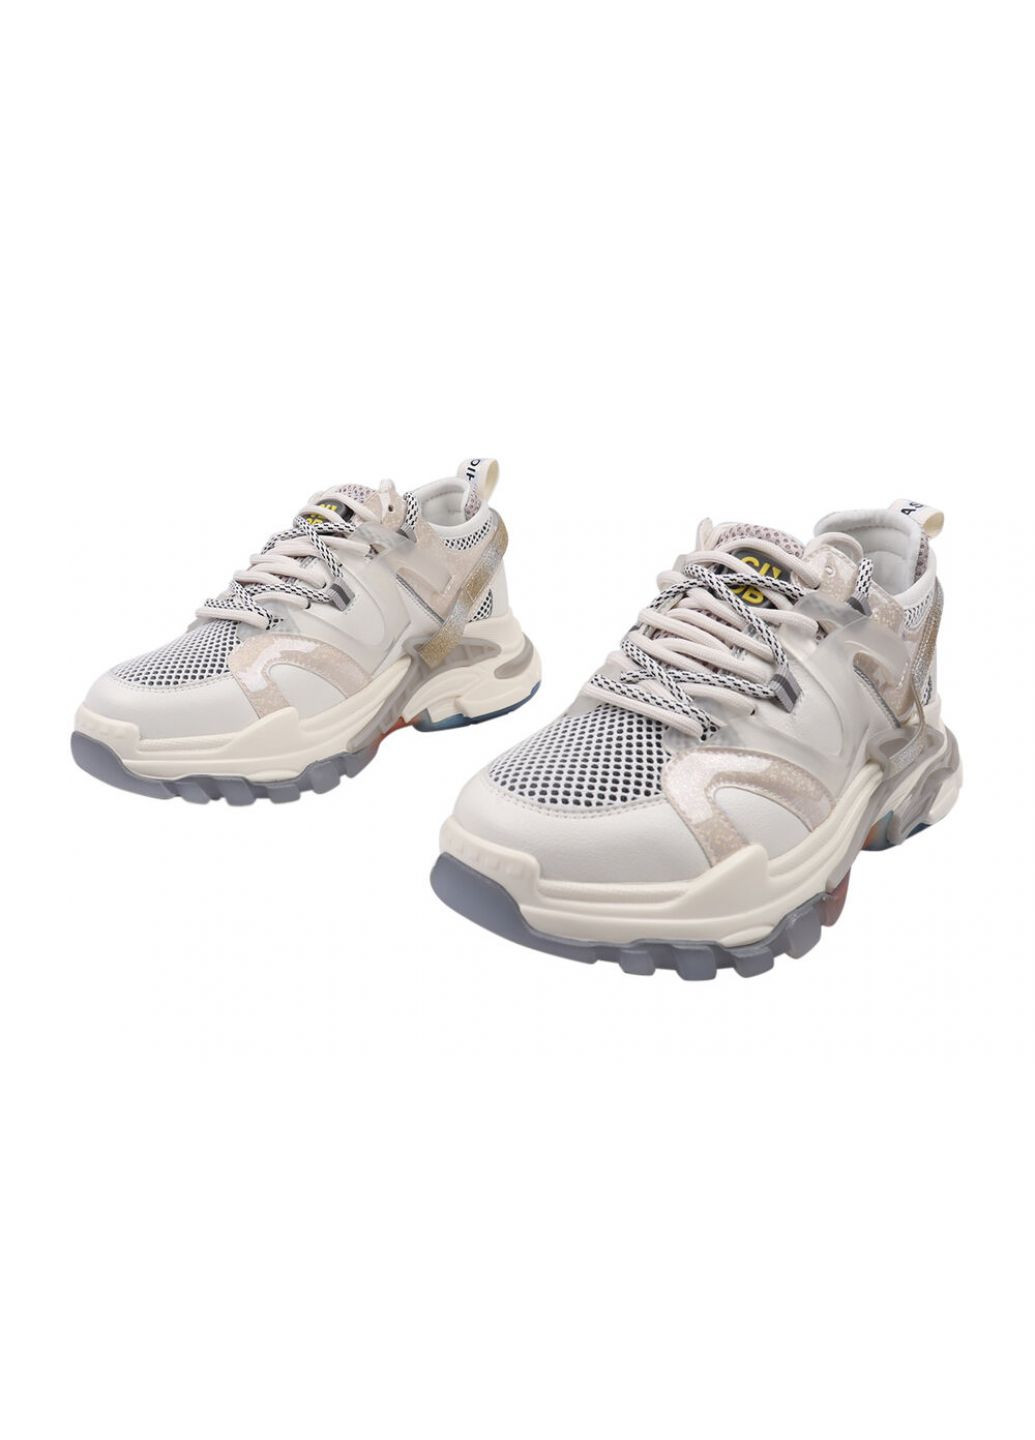 Білі кросівки жіночі з натуральної шкіри, на платформі, молочні, Lifexpert 576-21DK